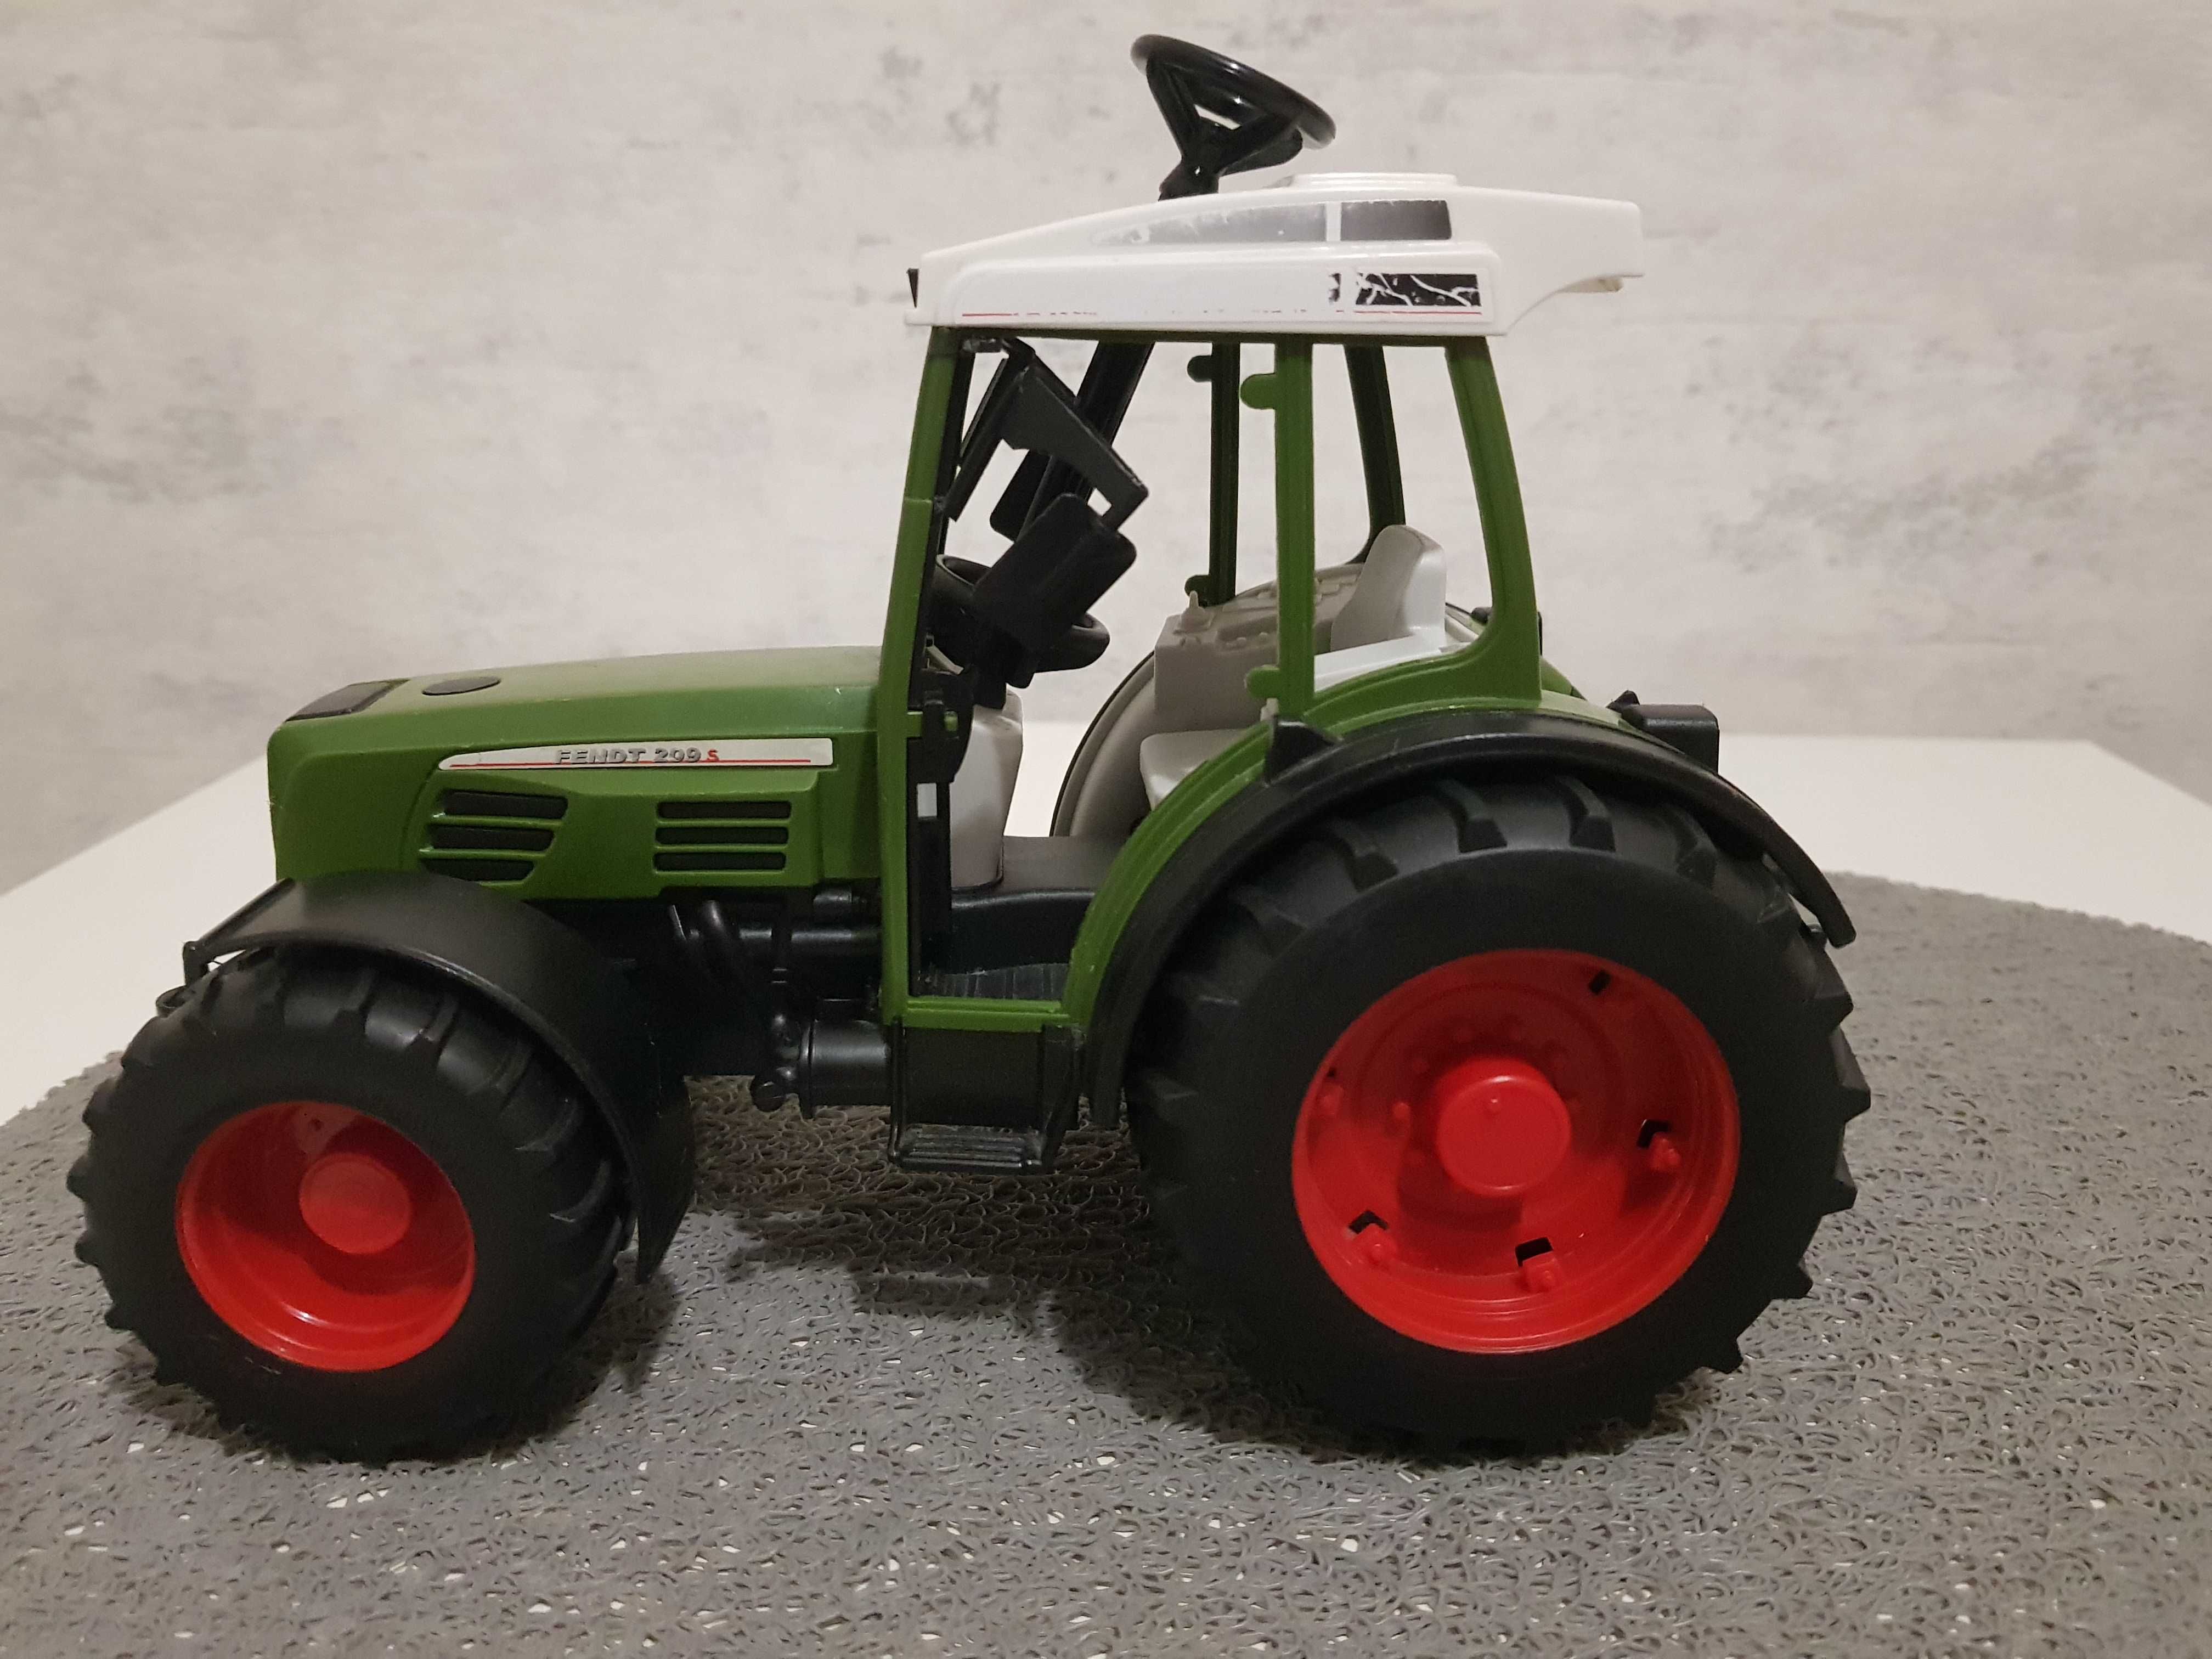 Bruder 02100 Traktor Fendt Farmer 209 S